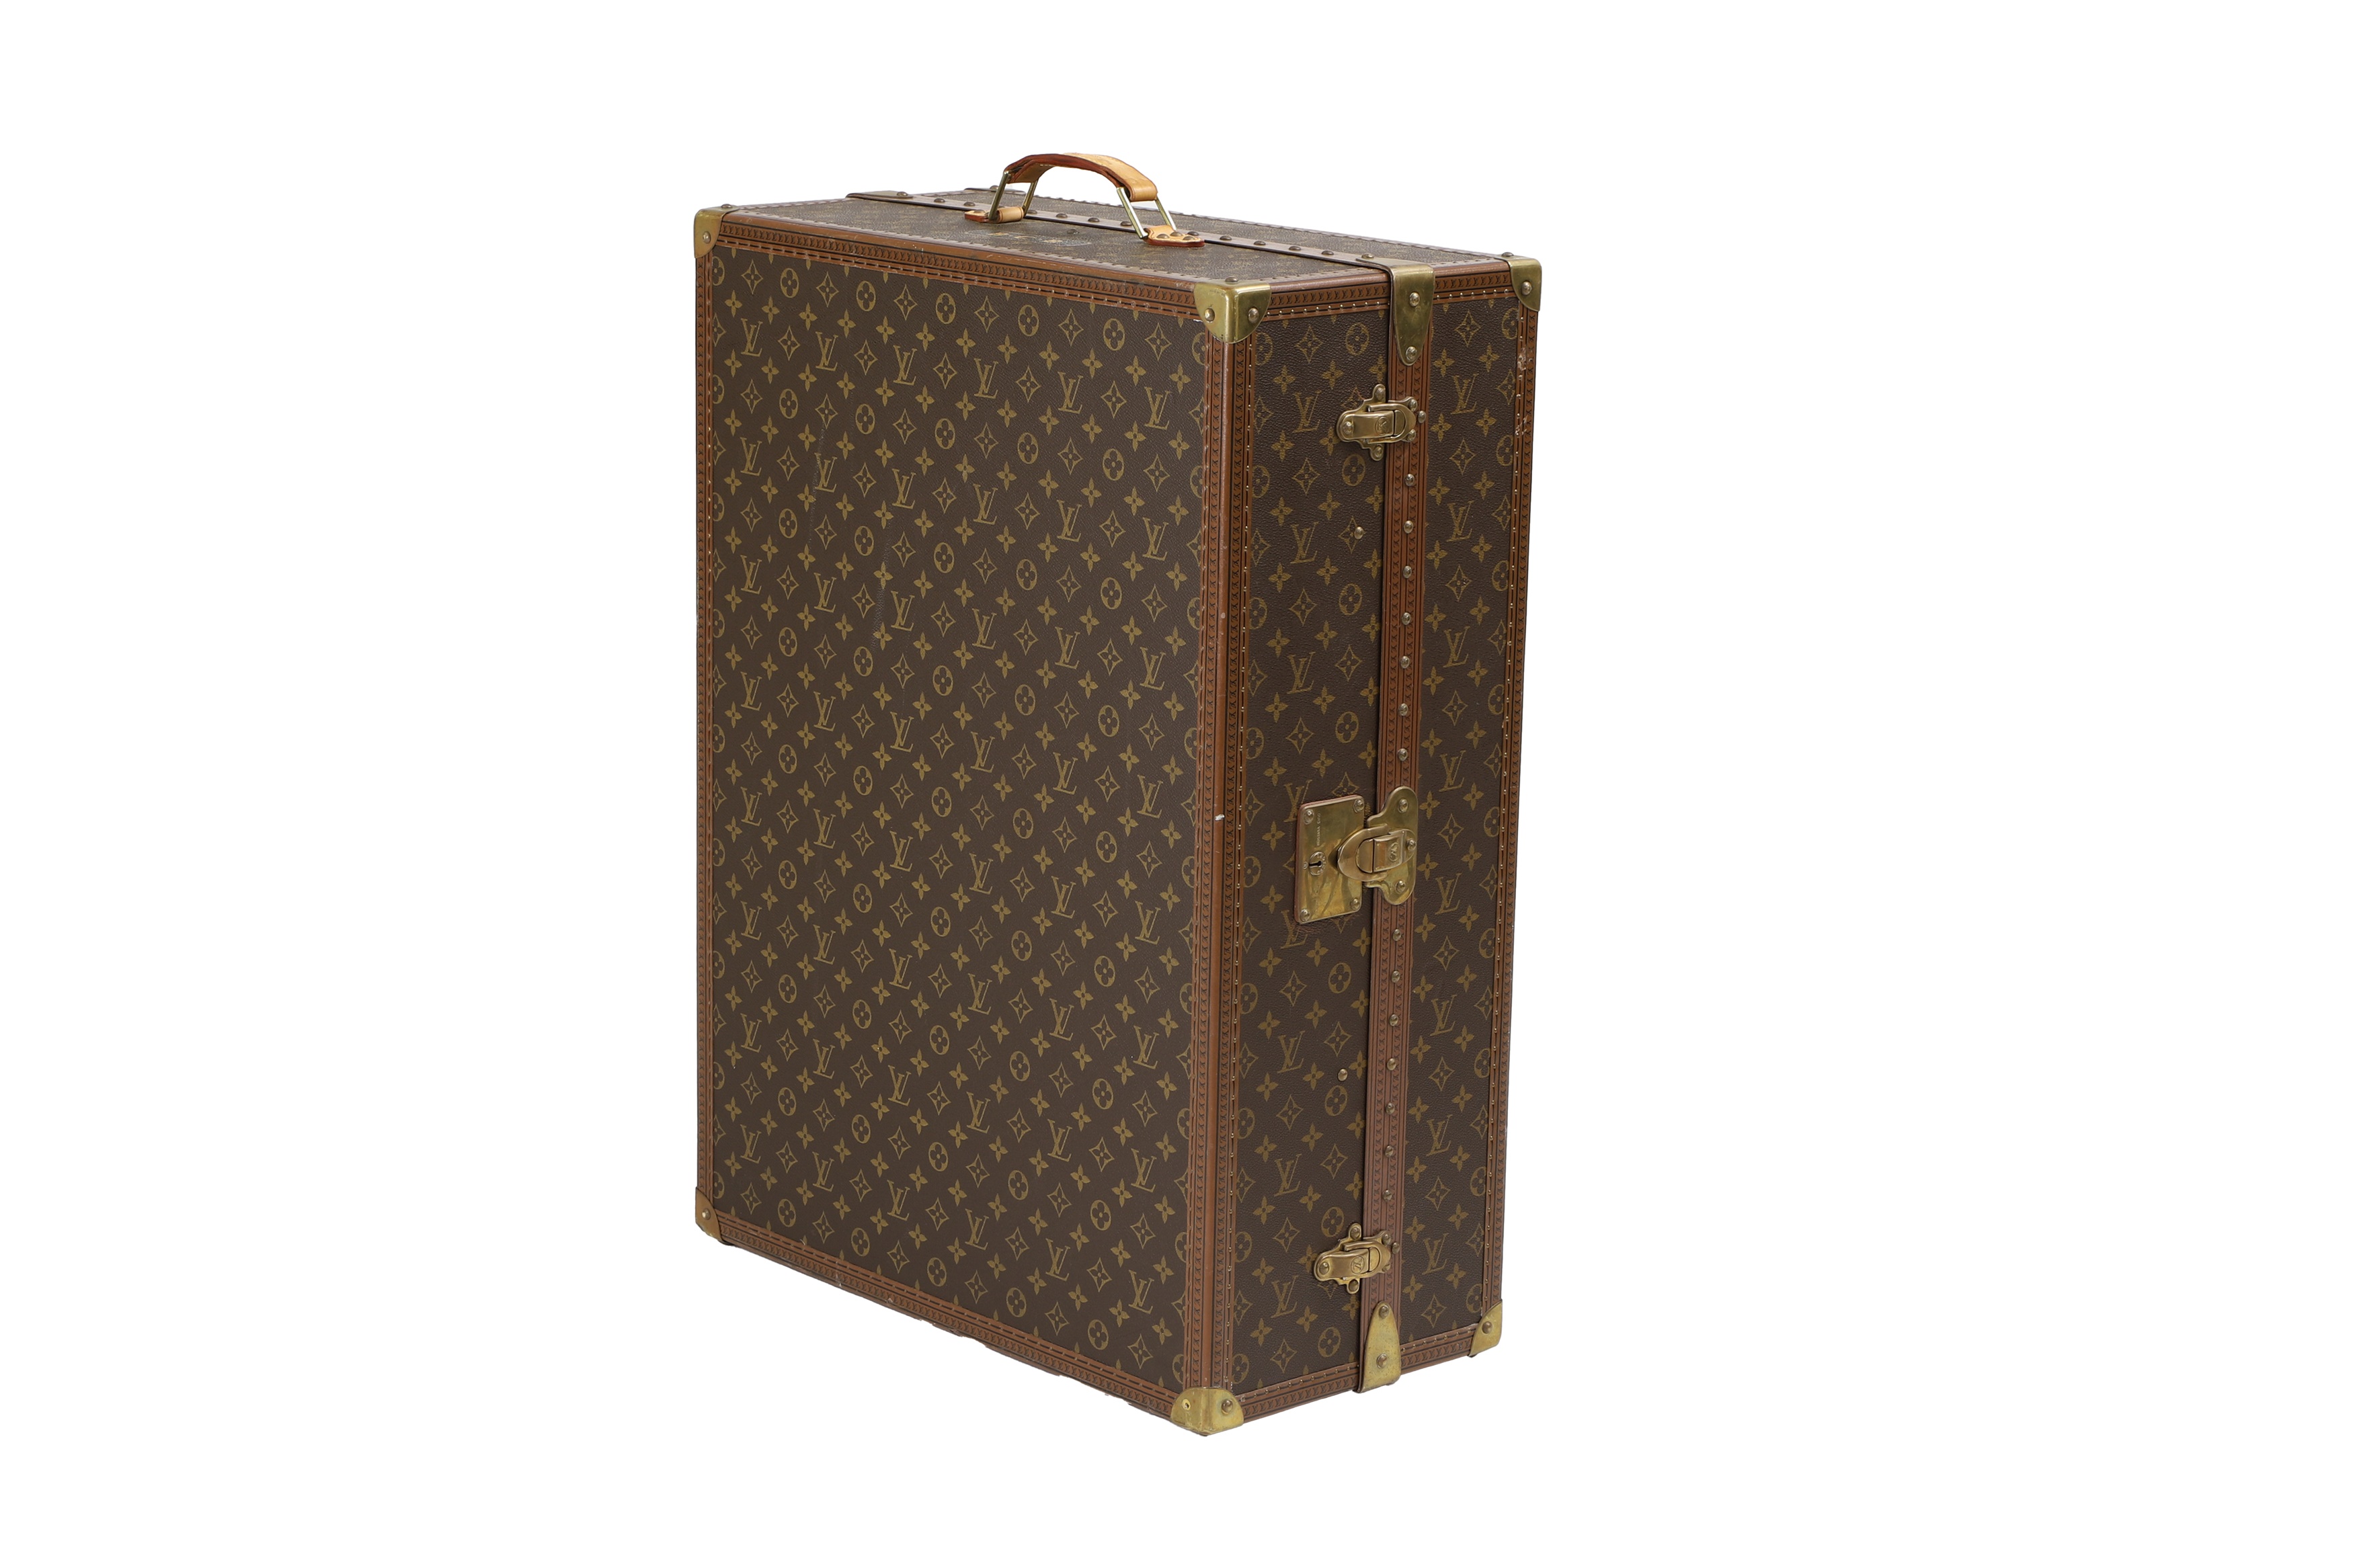 A Louis Vuitton monogrammed canvas valise à chaussures 'Géminé' shoe trunk (£8,000-12,000)